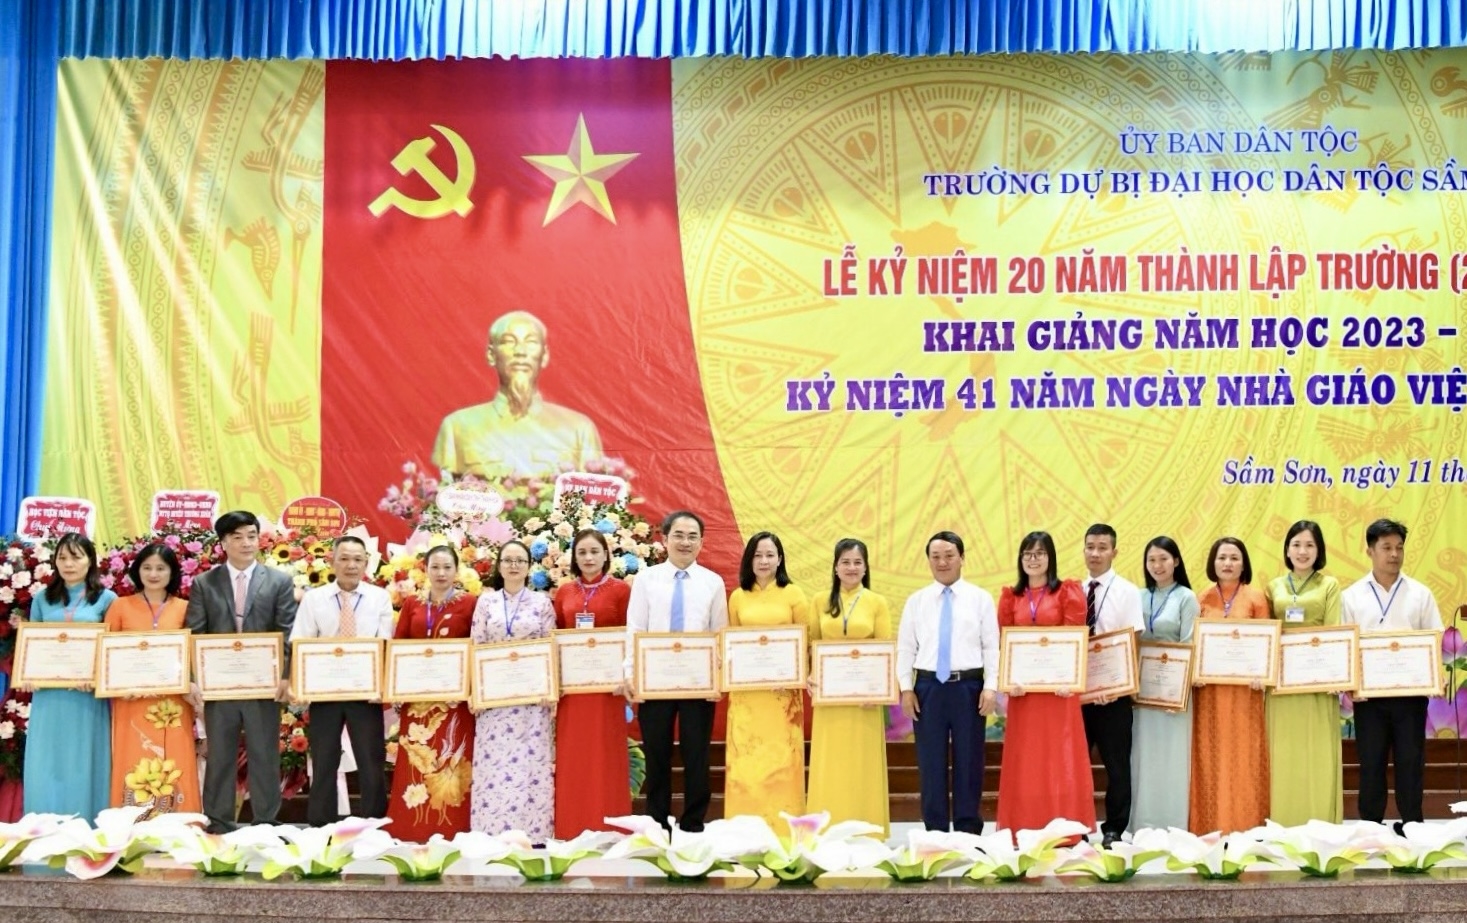 Nhân dịp này, tập thể và 15 cá nhân của nhà trường đã được nhận Bằng khen của Bộ trưởng, Chủ nhiệm Uỷ ban Dân tộc vì thành tích xuất sắc trong công tác giáo dục, đào tạo học sinh người DTTS và miền núi, góp phần vào sự nghiệp phát triển các dân tộc Việt Nam.